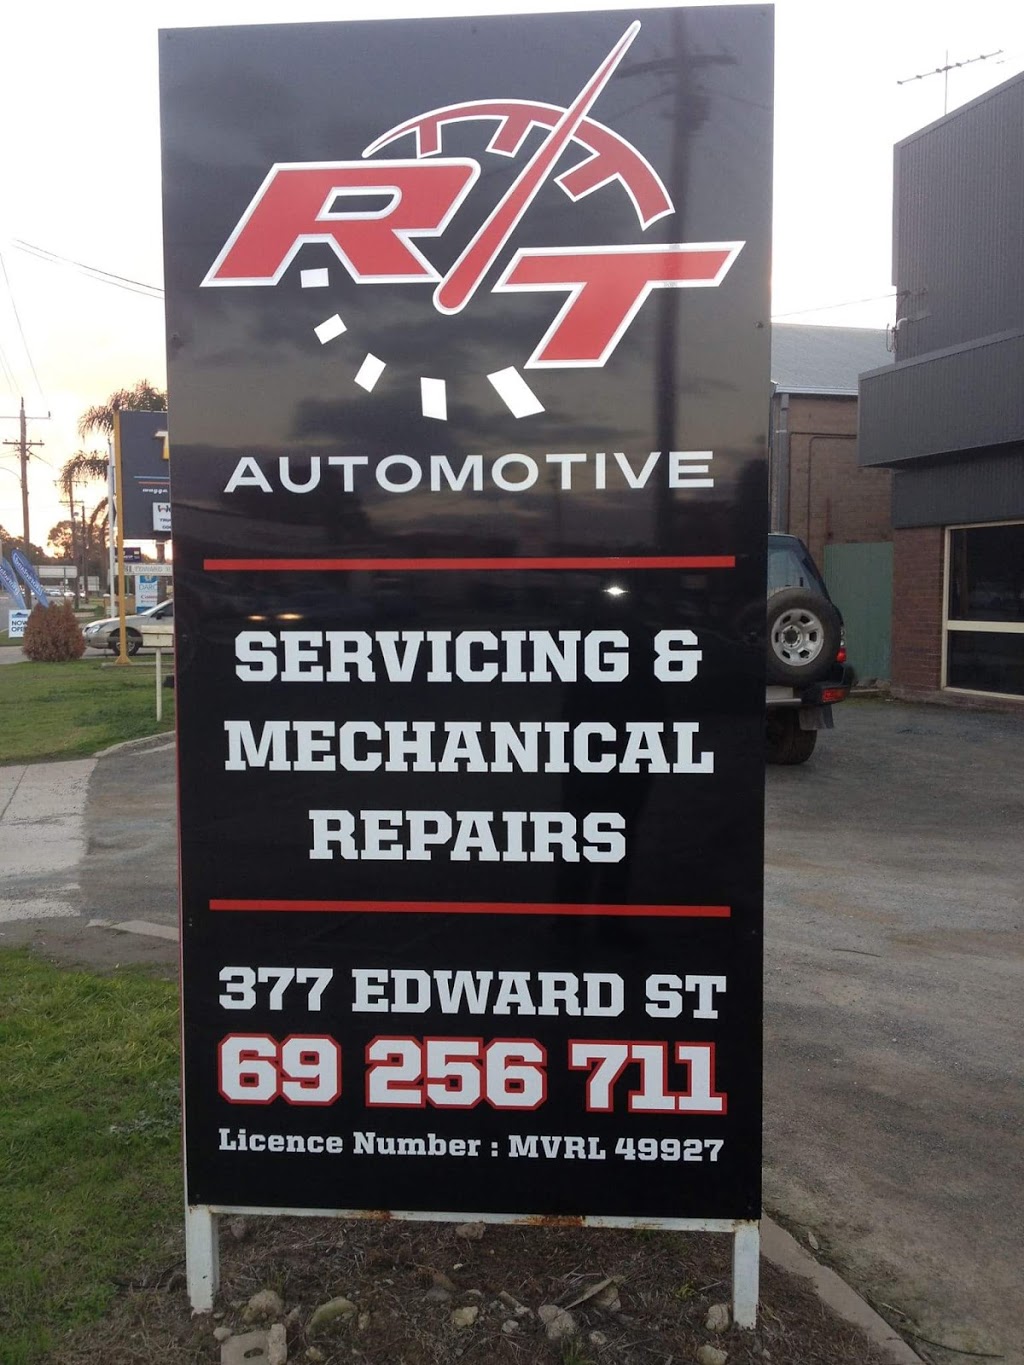 R/T Automotive | car repair | 16-20 Ashmont Ave, Ashmont NSW 2650, Australia | 69256711 OR +61 69256711